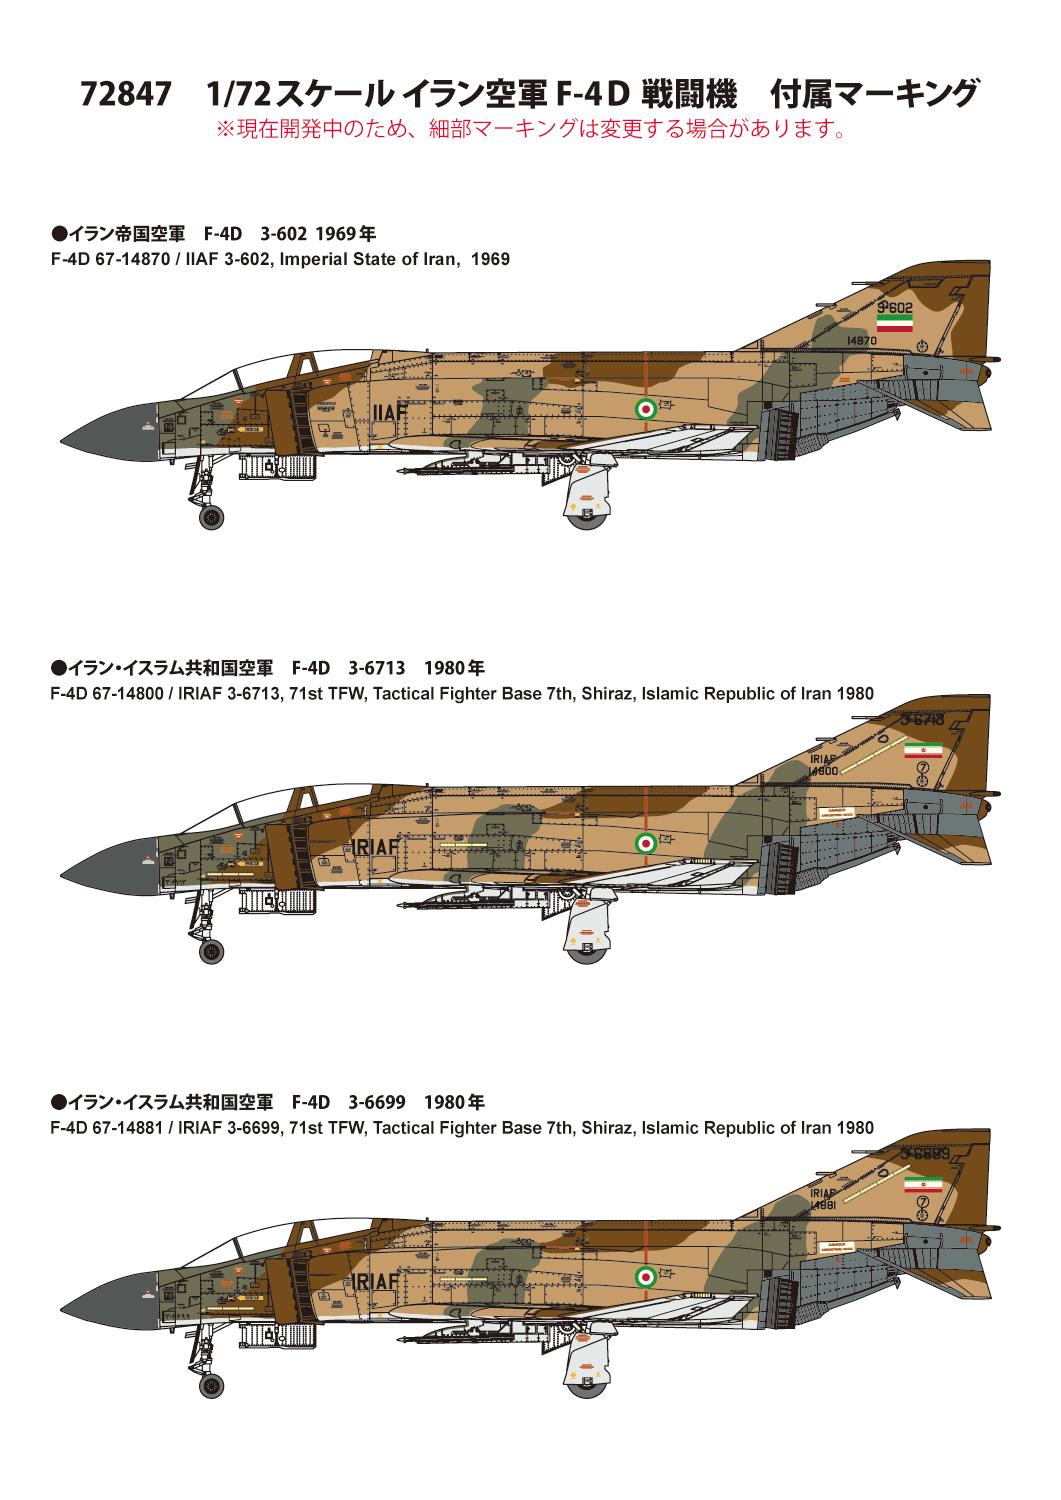 超ポイント祭?期間限定】 1 72 イラン空軍 F-4D 戦闘機 プラモデル ファインモールド bioshop-dakar.com